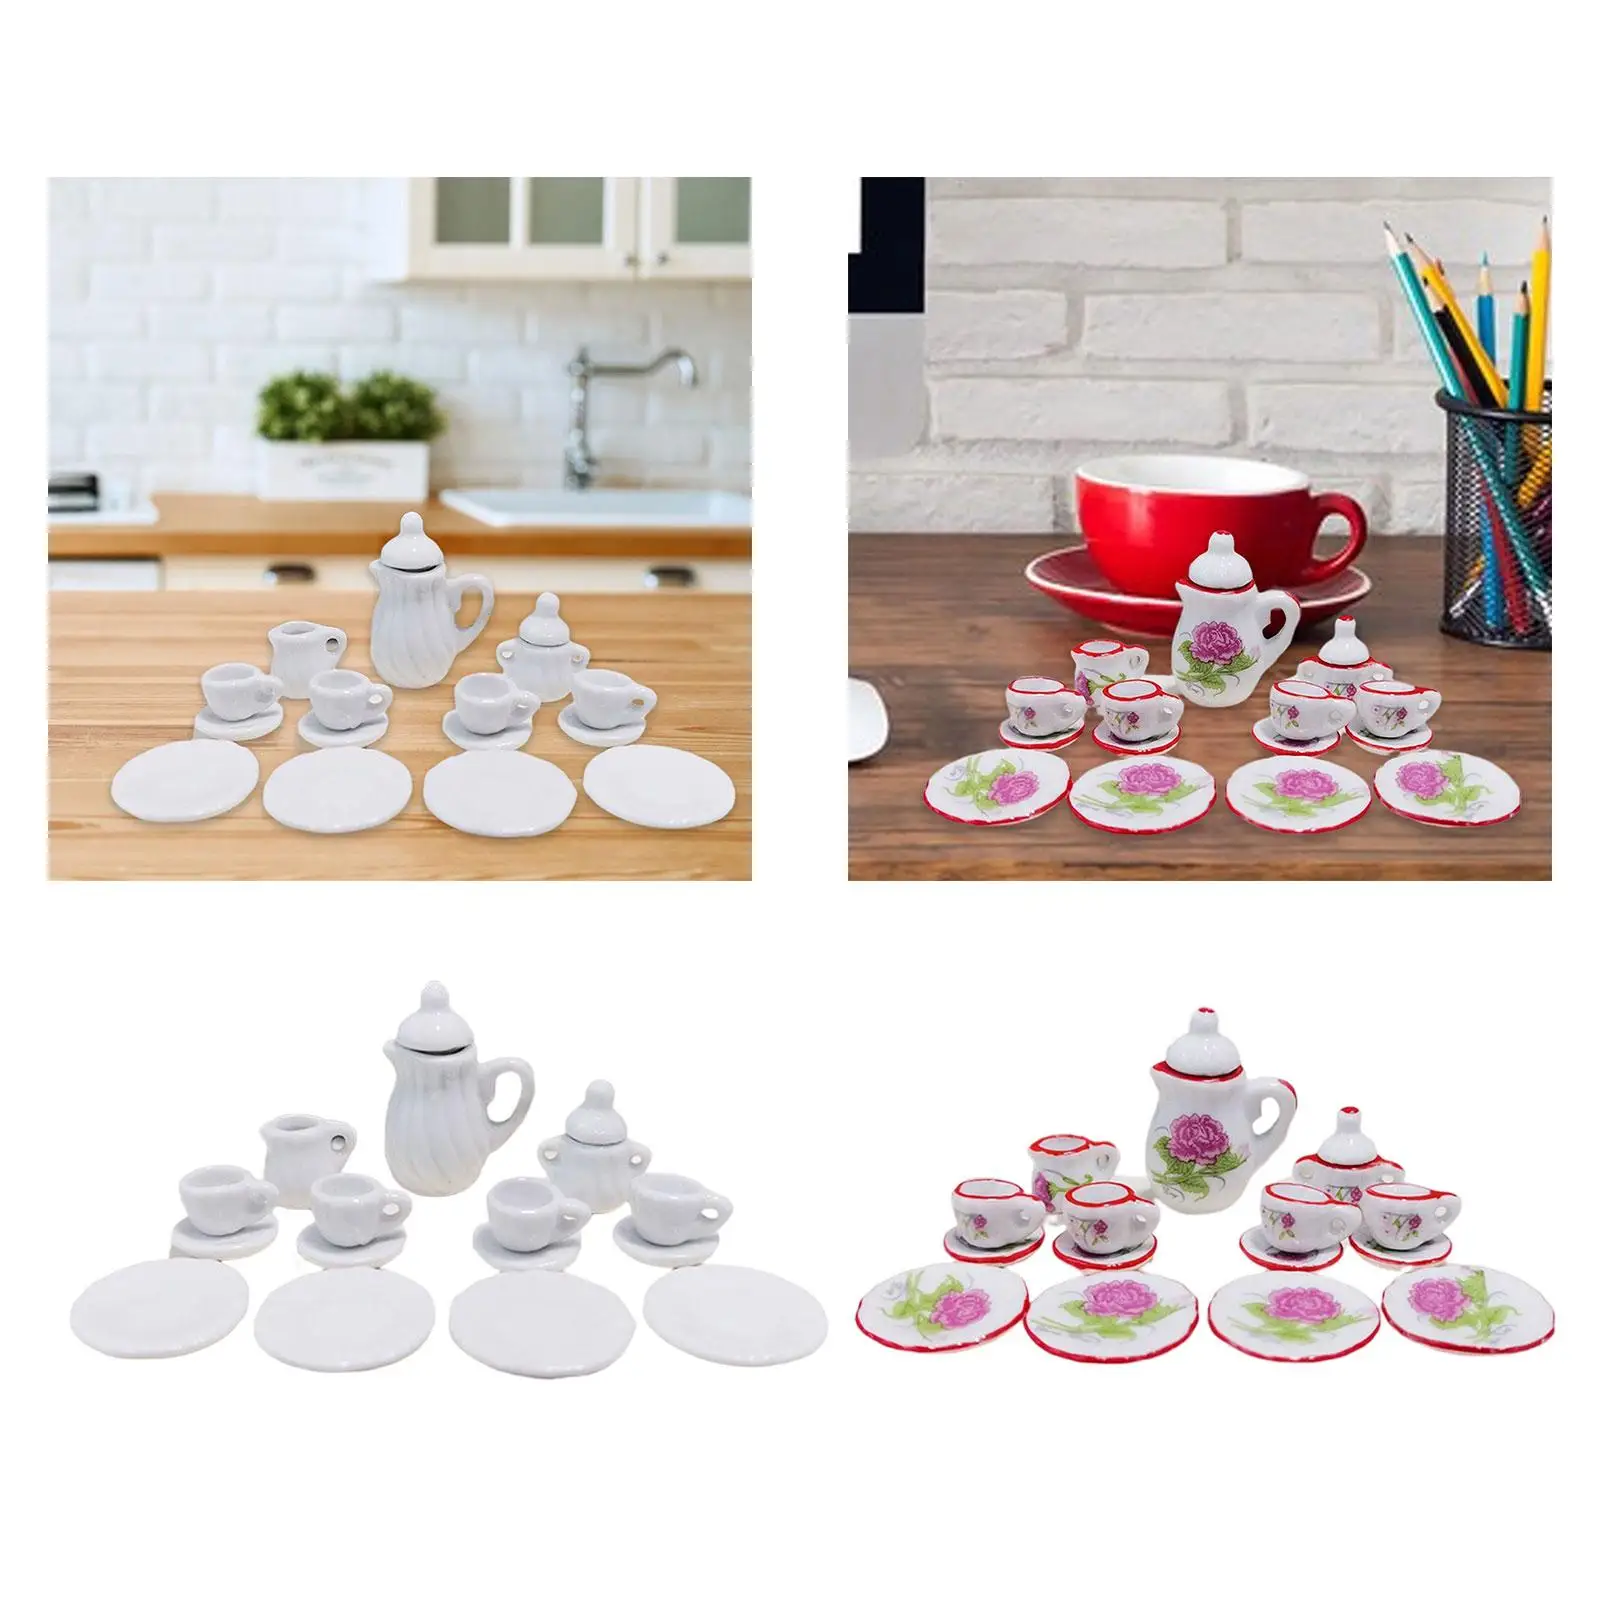 Dollhouse Miniature Porcelain Tea Cup Home Mini Teapot Cup Plate Ornaments